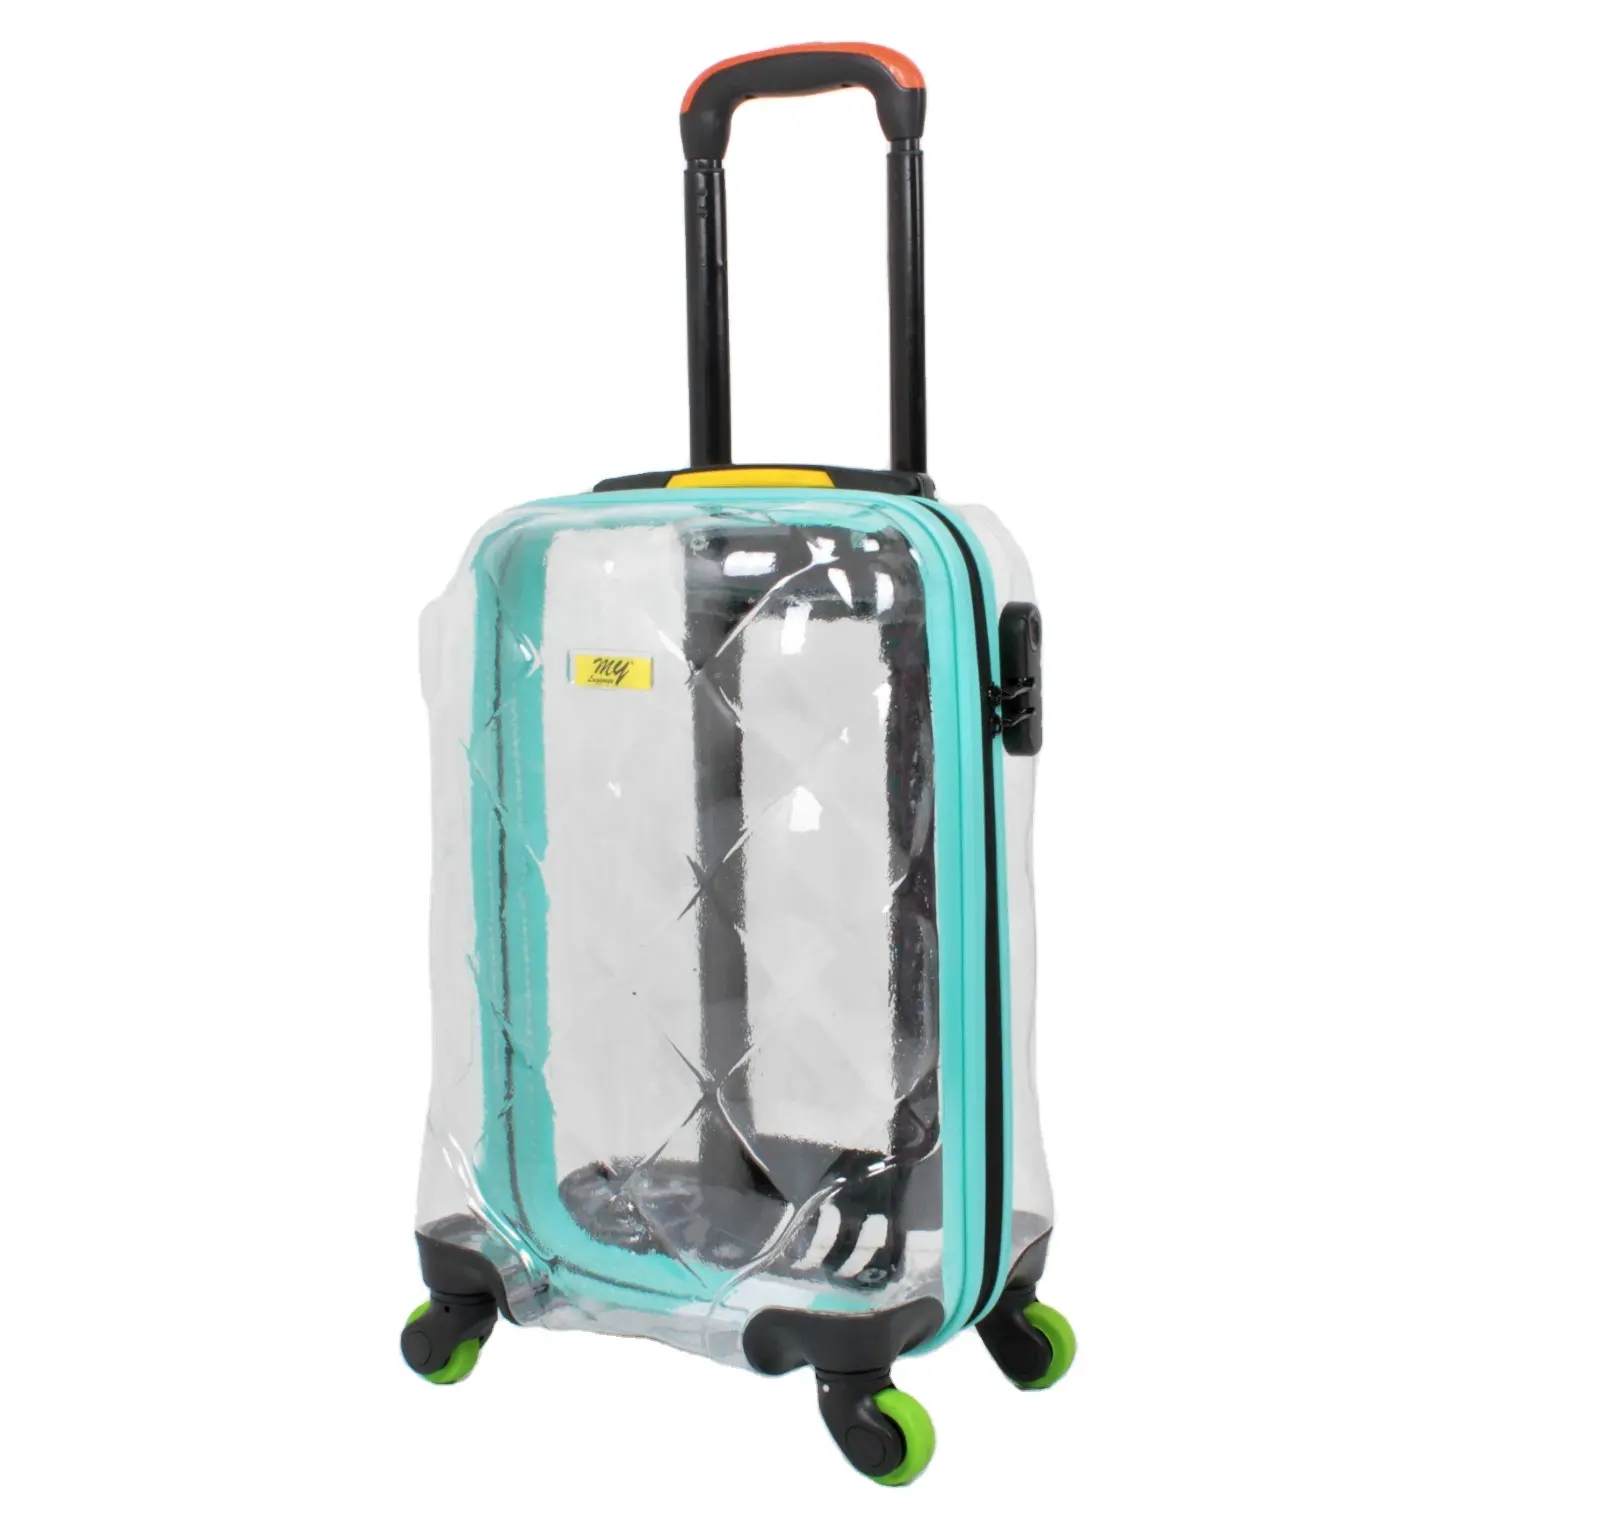 Bagaj ve çanta yapılan yeni stil türkiye şeffaf bavul bagaj 8 tekerlekli Spinner seyahat setleri tekerlekli çantalar bagaj çantası PC